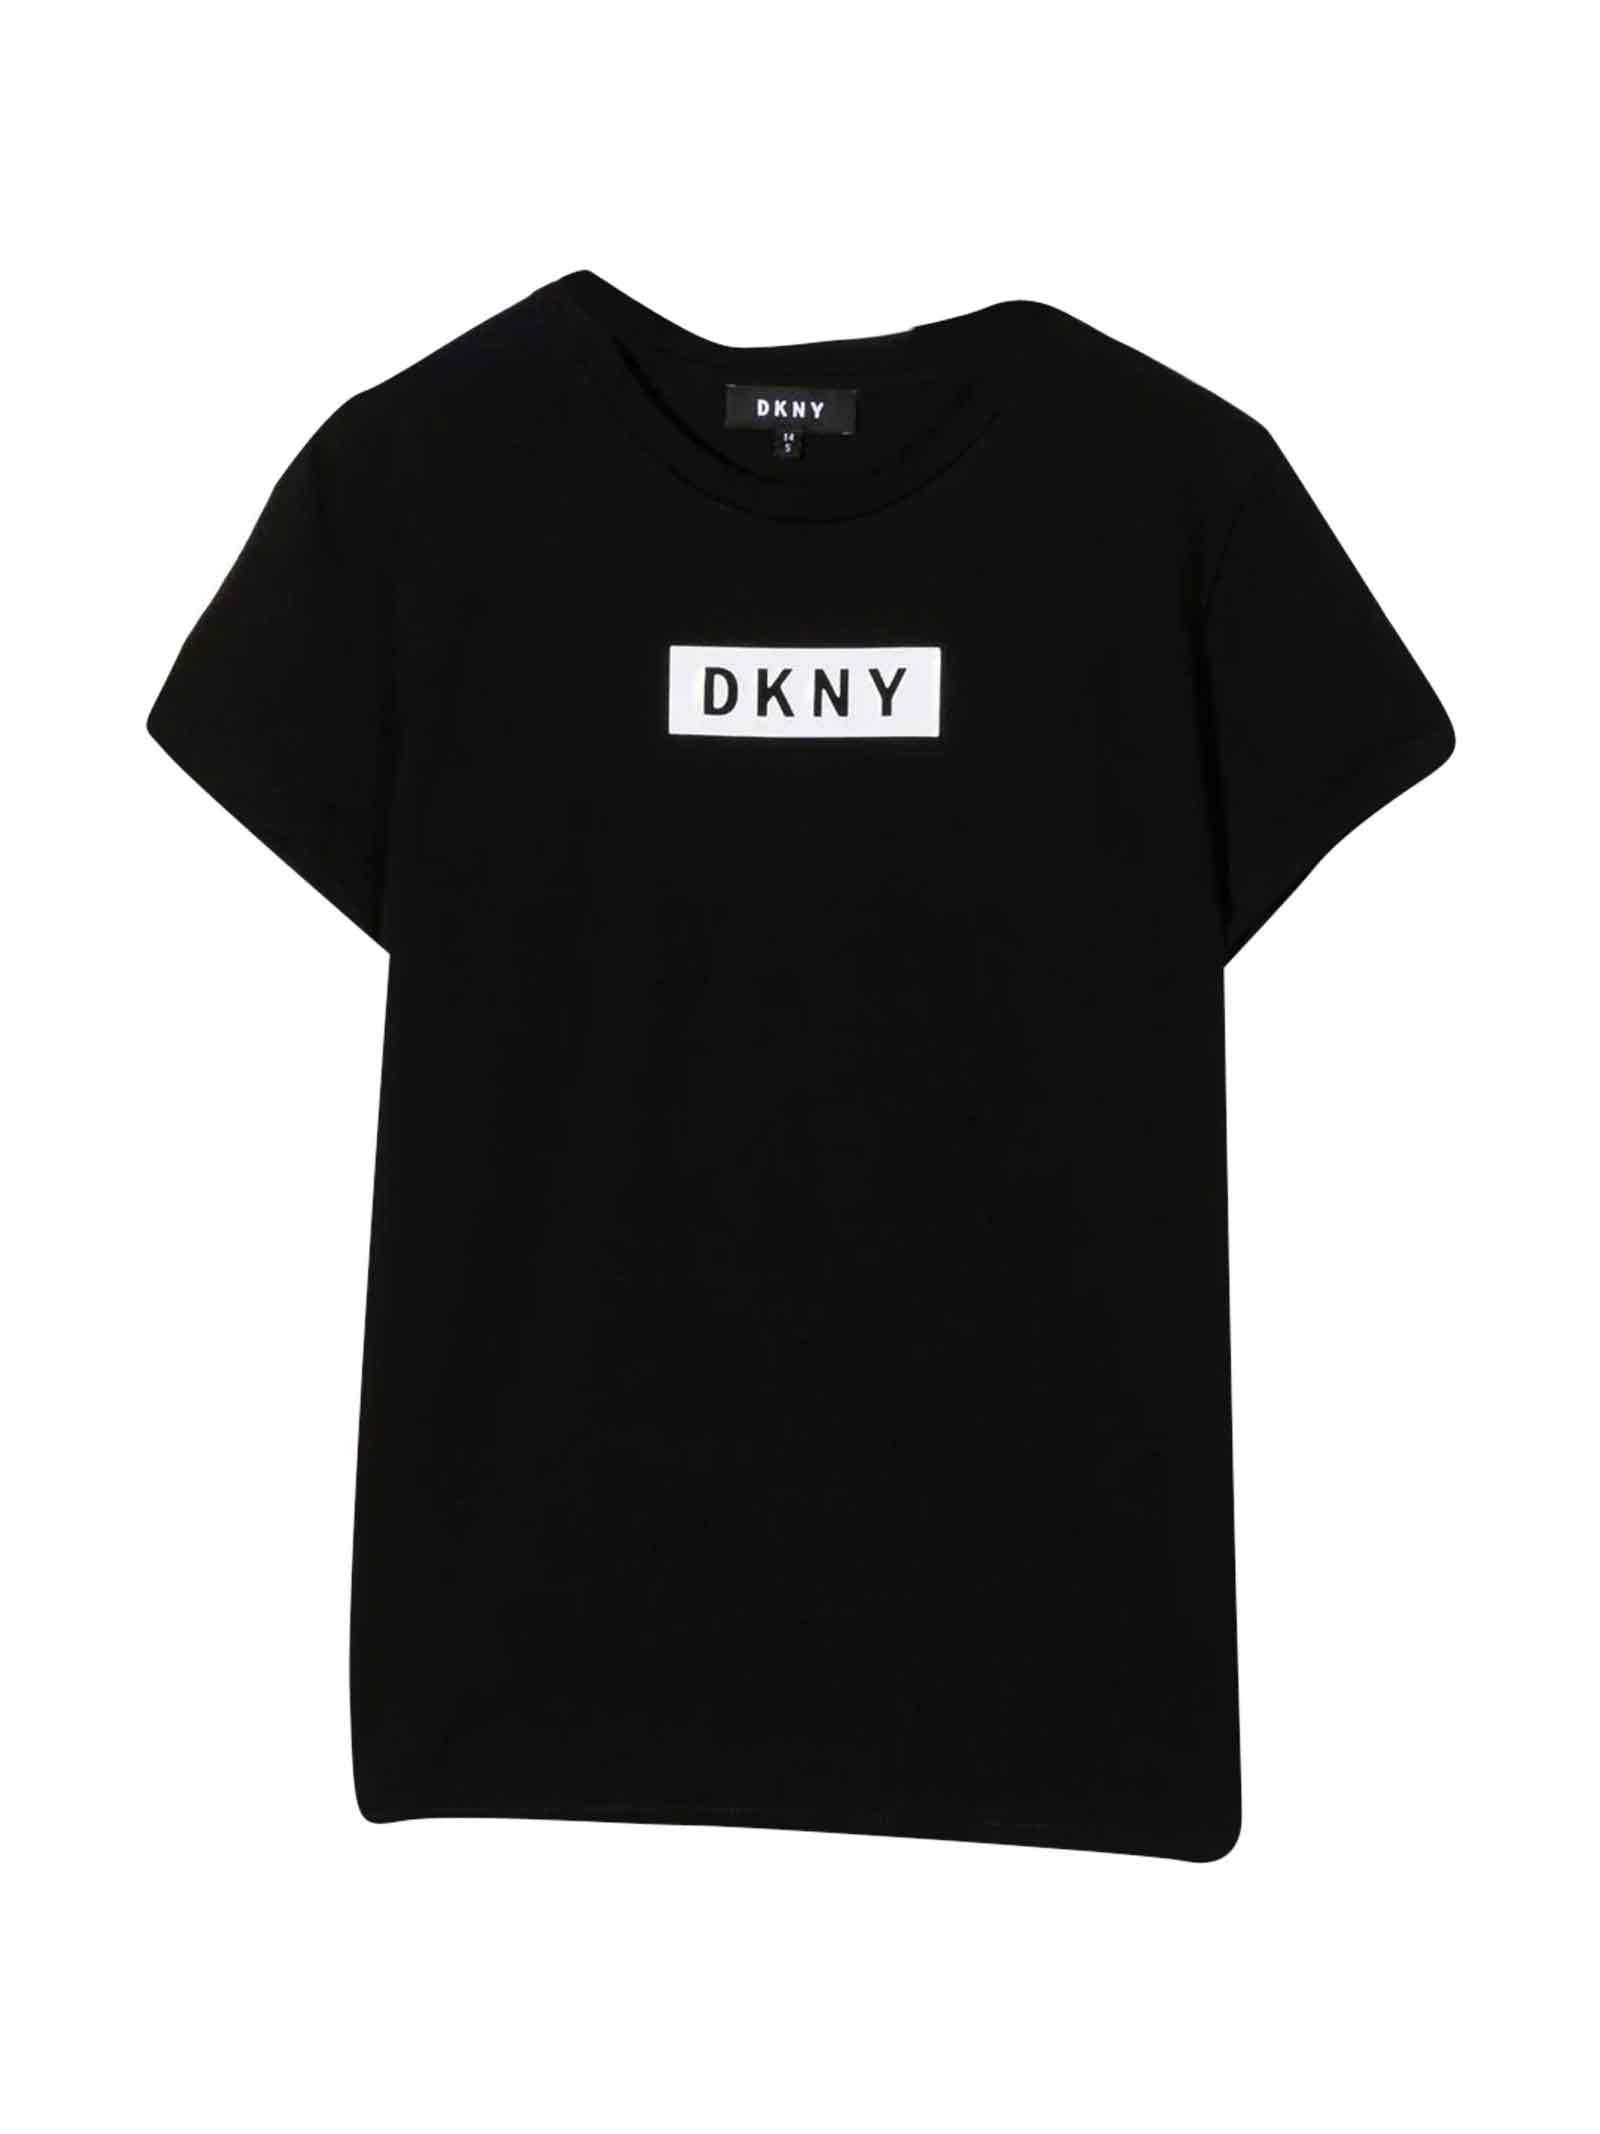 DKNY Black T-shirt Teen Unisex